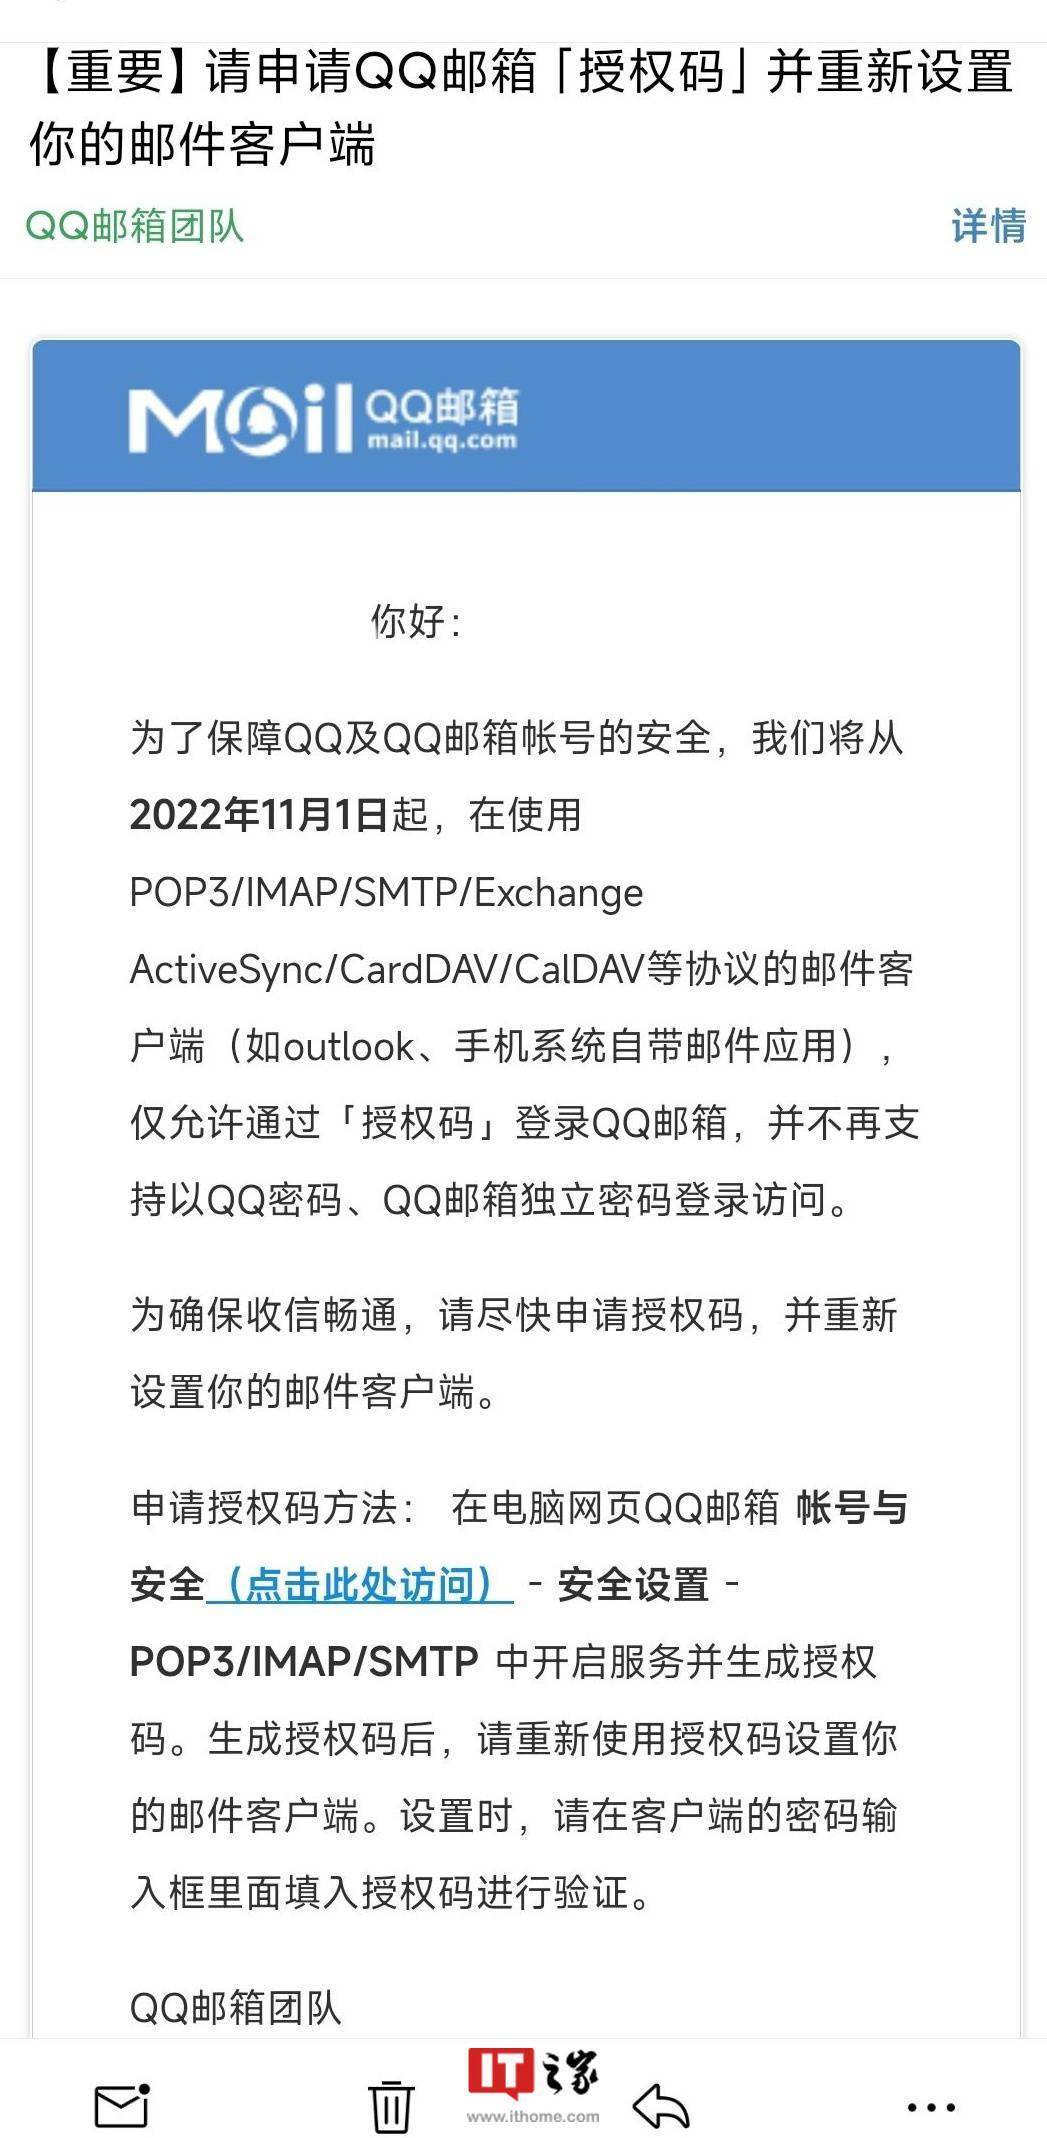 QQ 邮箱第三方客户端不再支持密码登录<strong></p>
<p>火币网登录</strong>，仅允许授权码登录